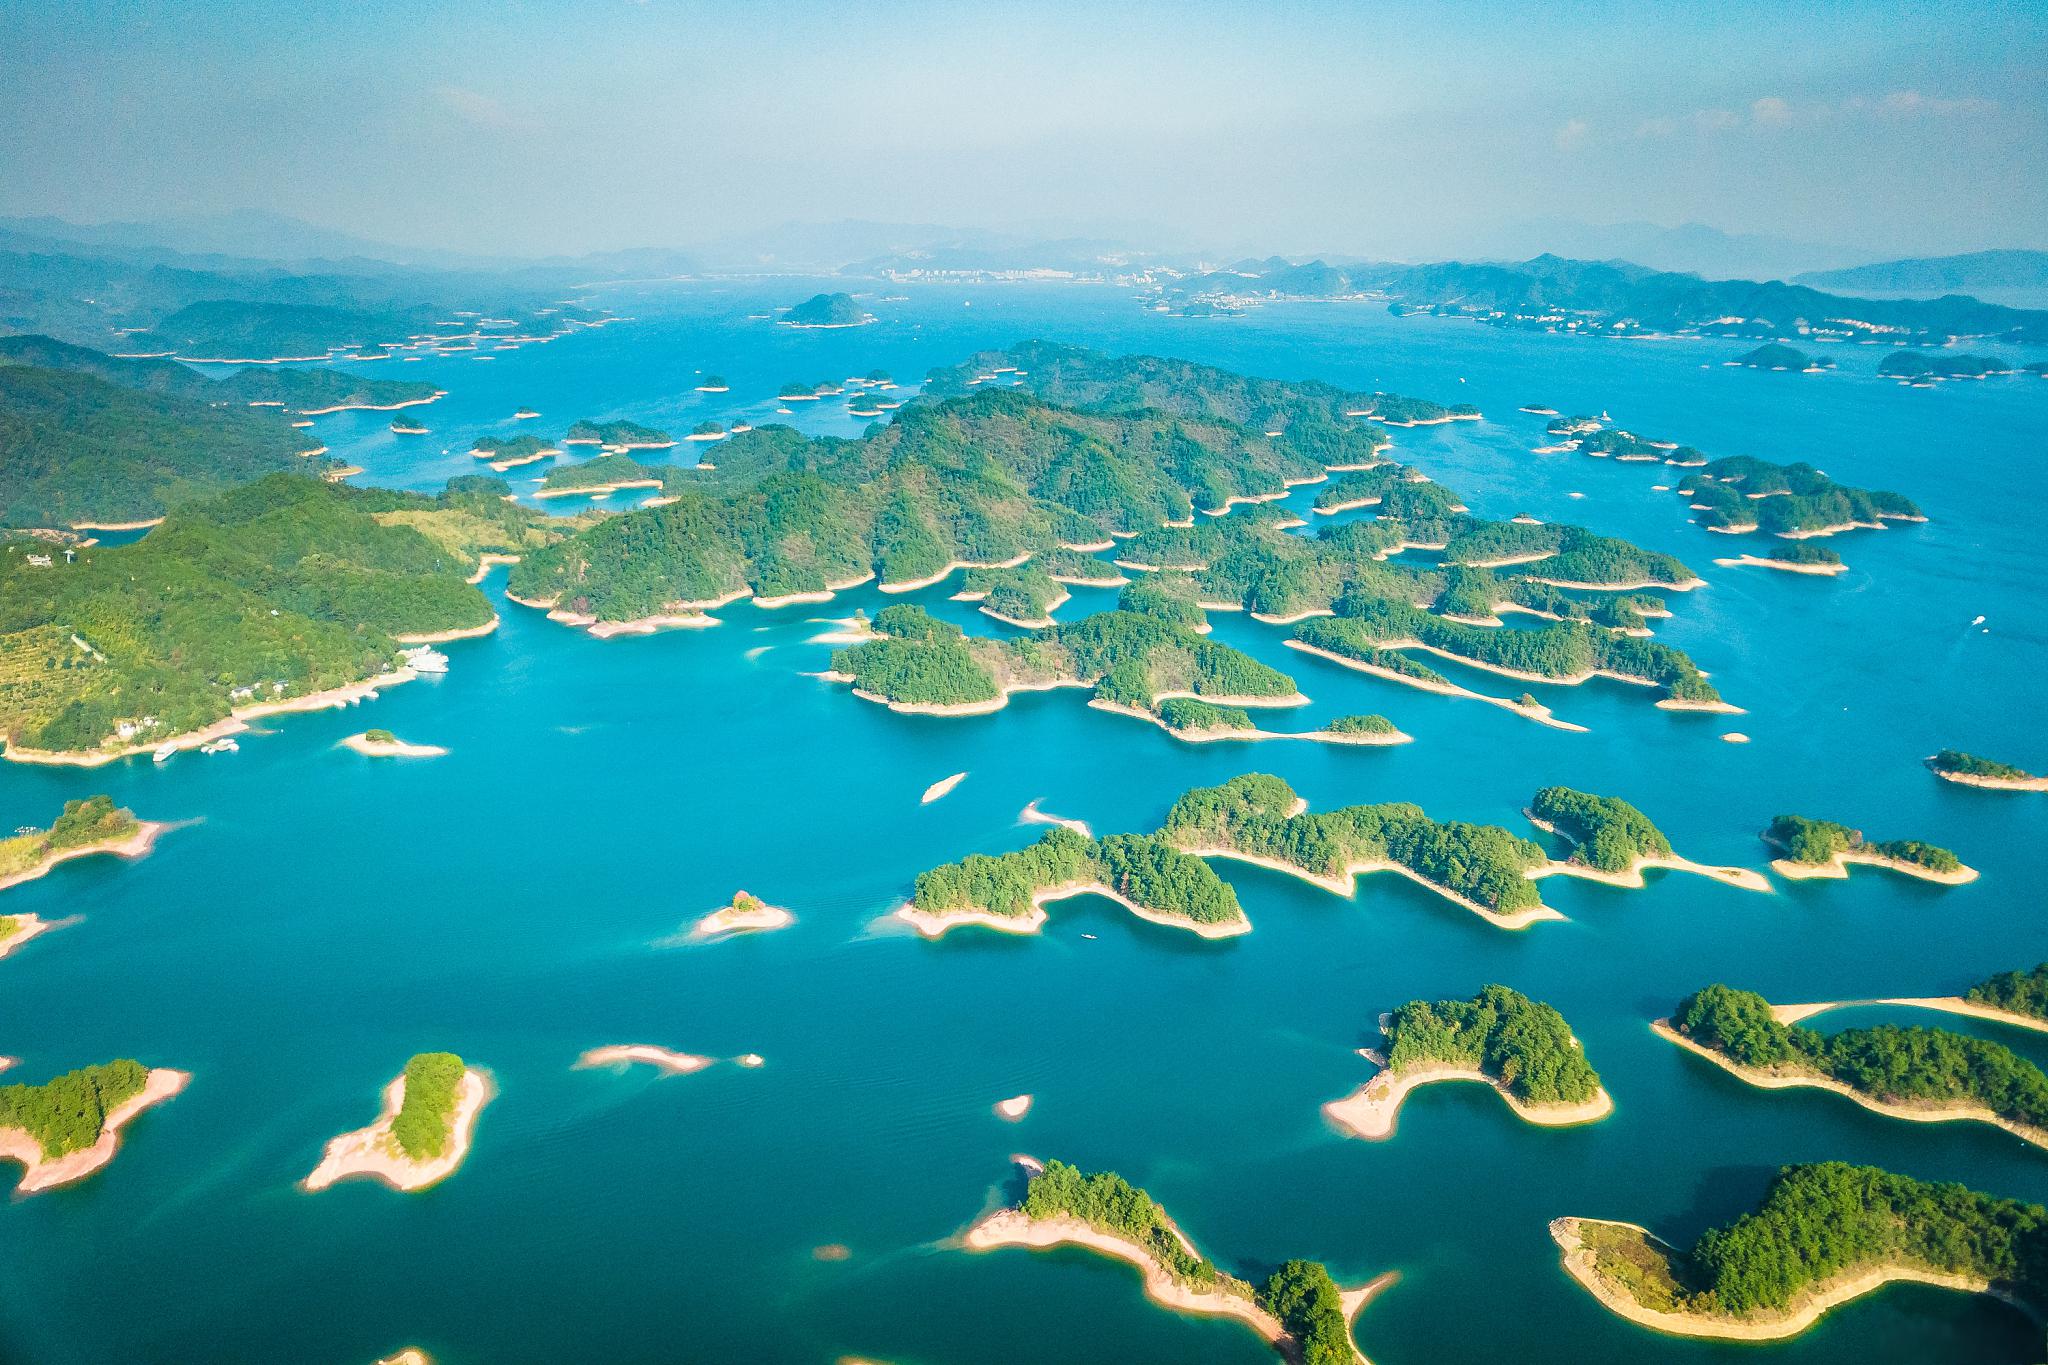 杭州千岛湖景区游玩攻略 杭州千岛湖景区是中国大陆最大的淡水湖泊之